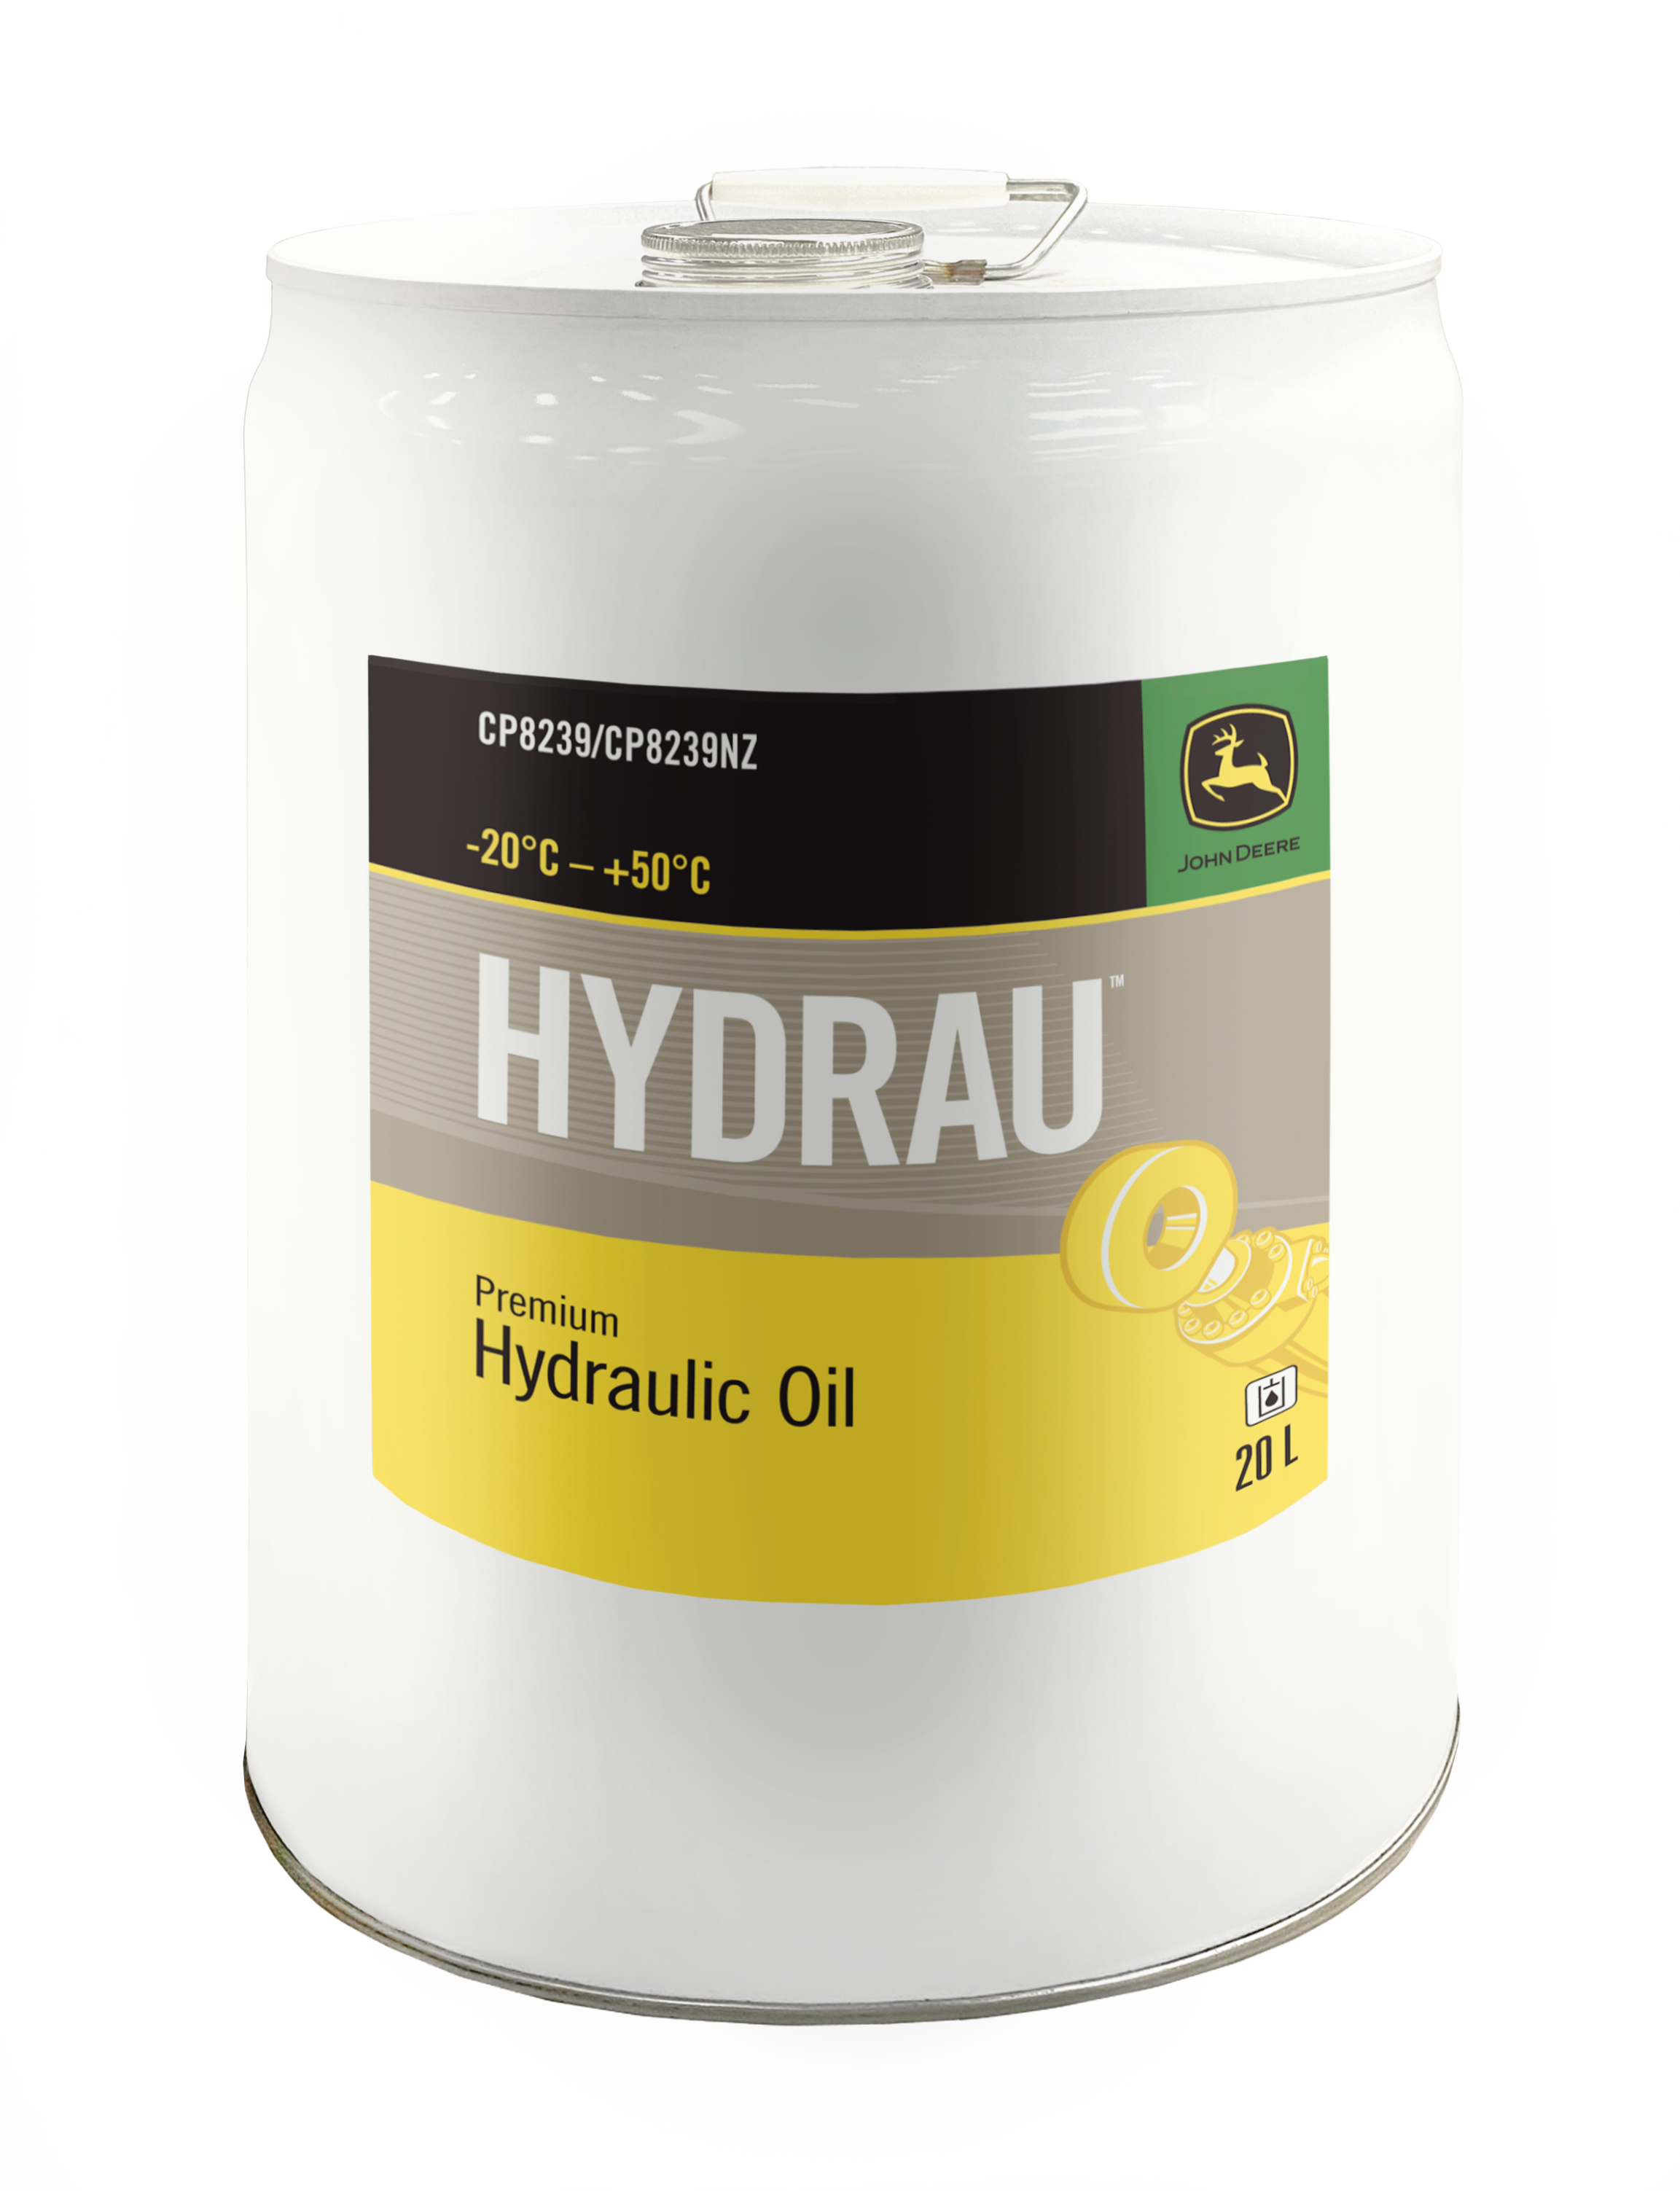 hydrau™ hydraulic oil studio image